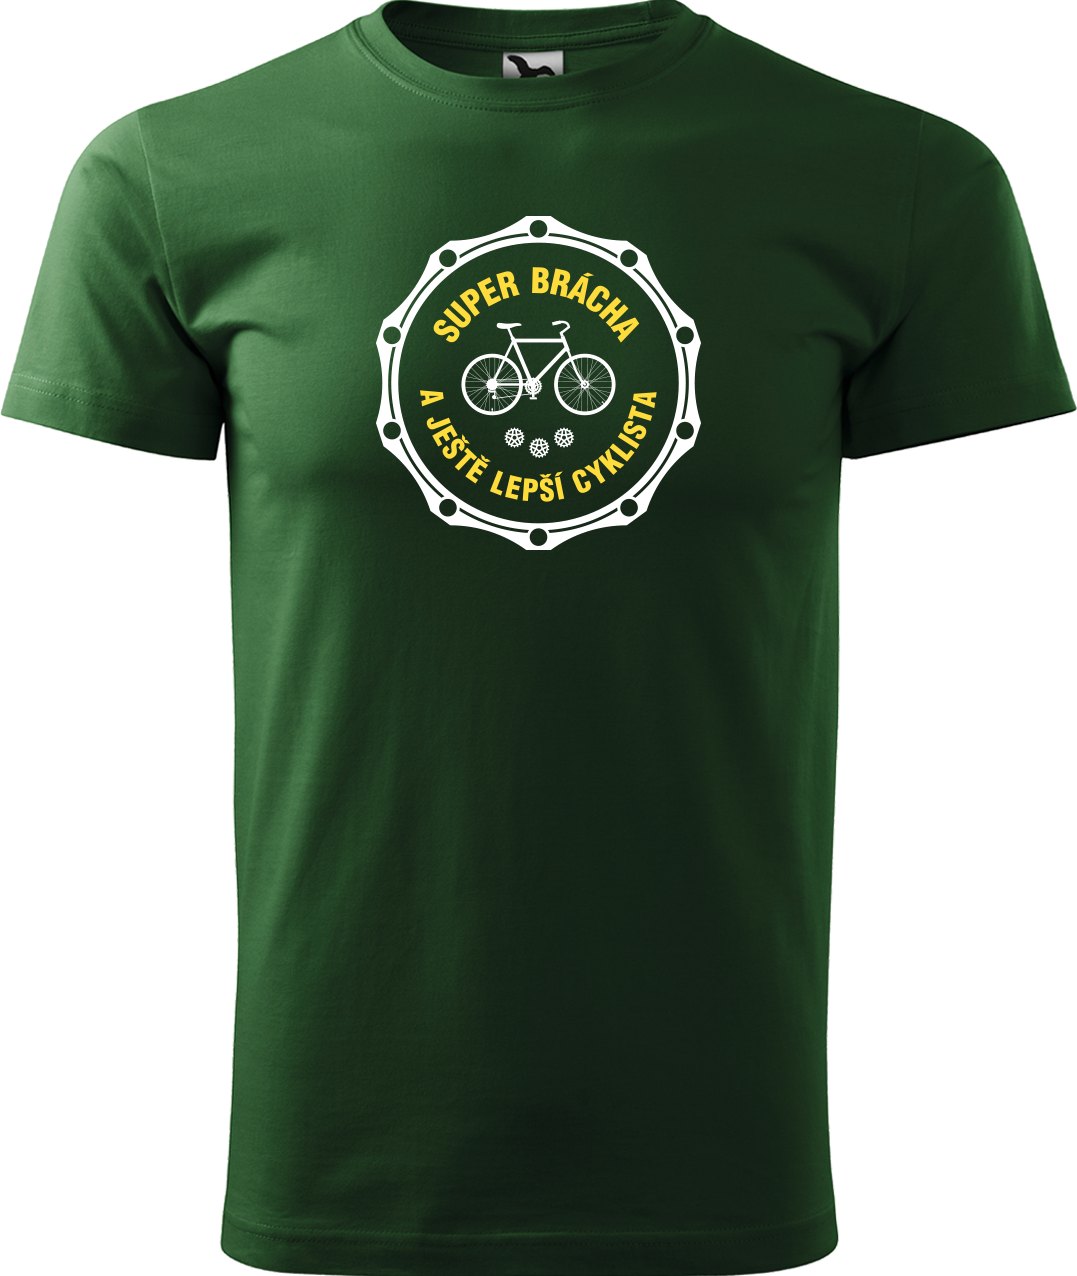 Pánské tričko pro cyklistu - Super brácha a ještě lepší cyklista Velikost: S, Barva: Lahvově zelená (06)